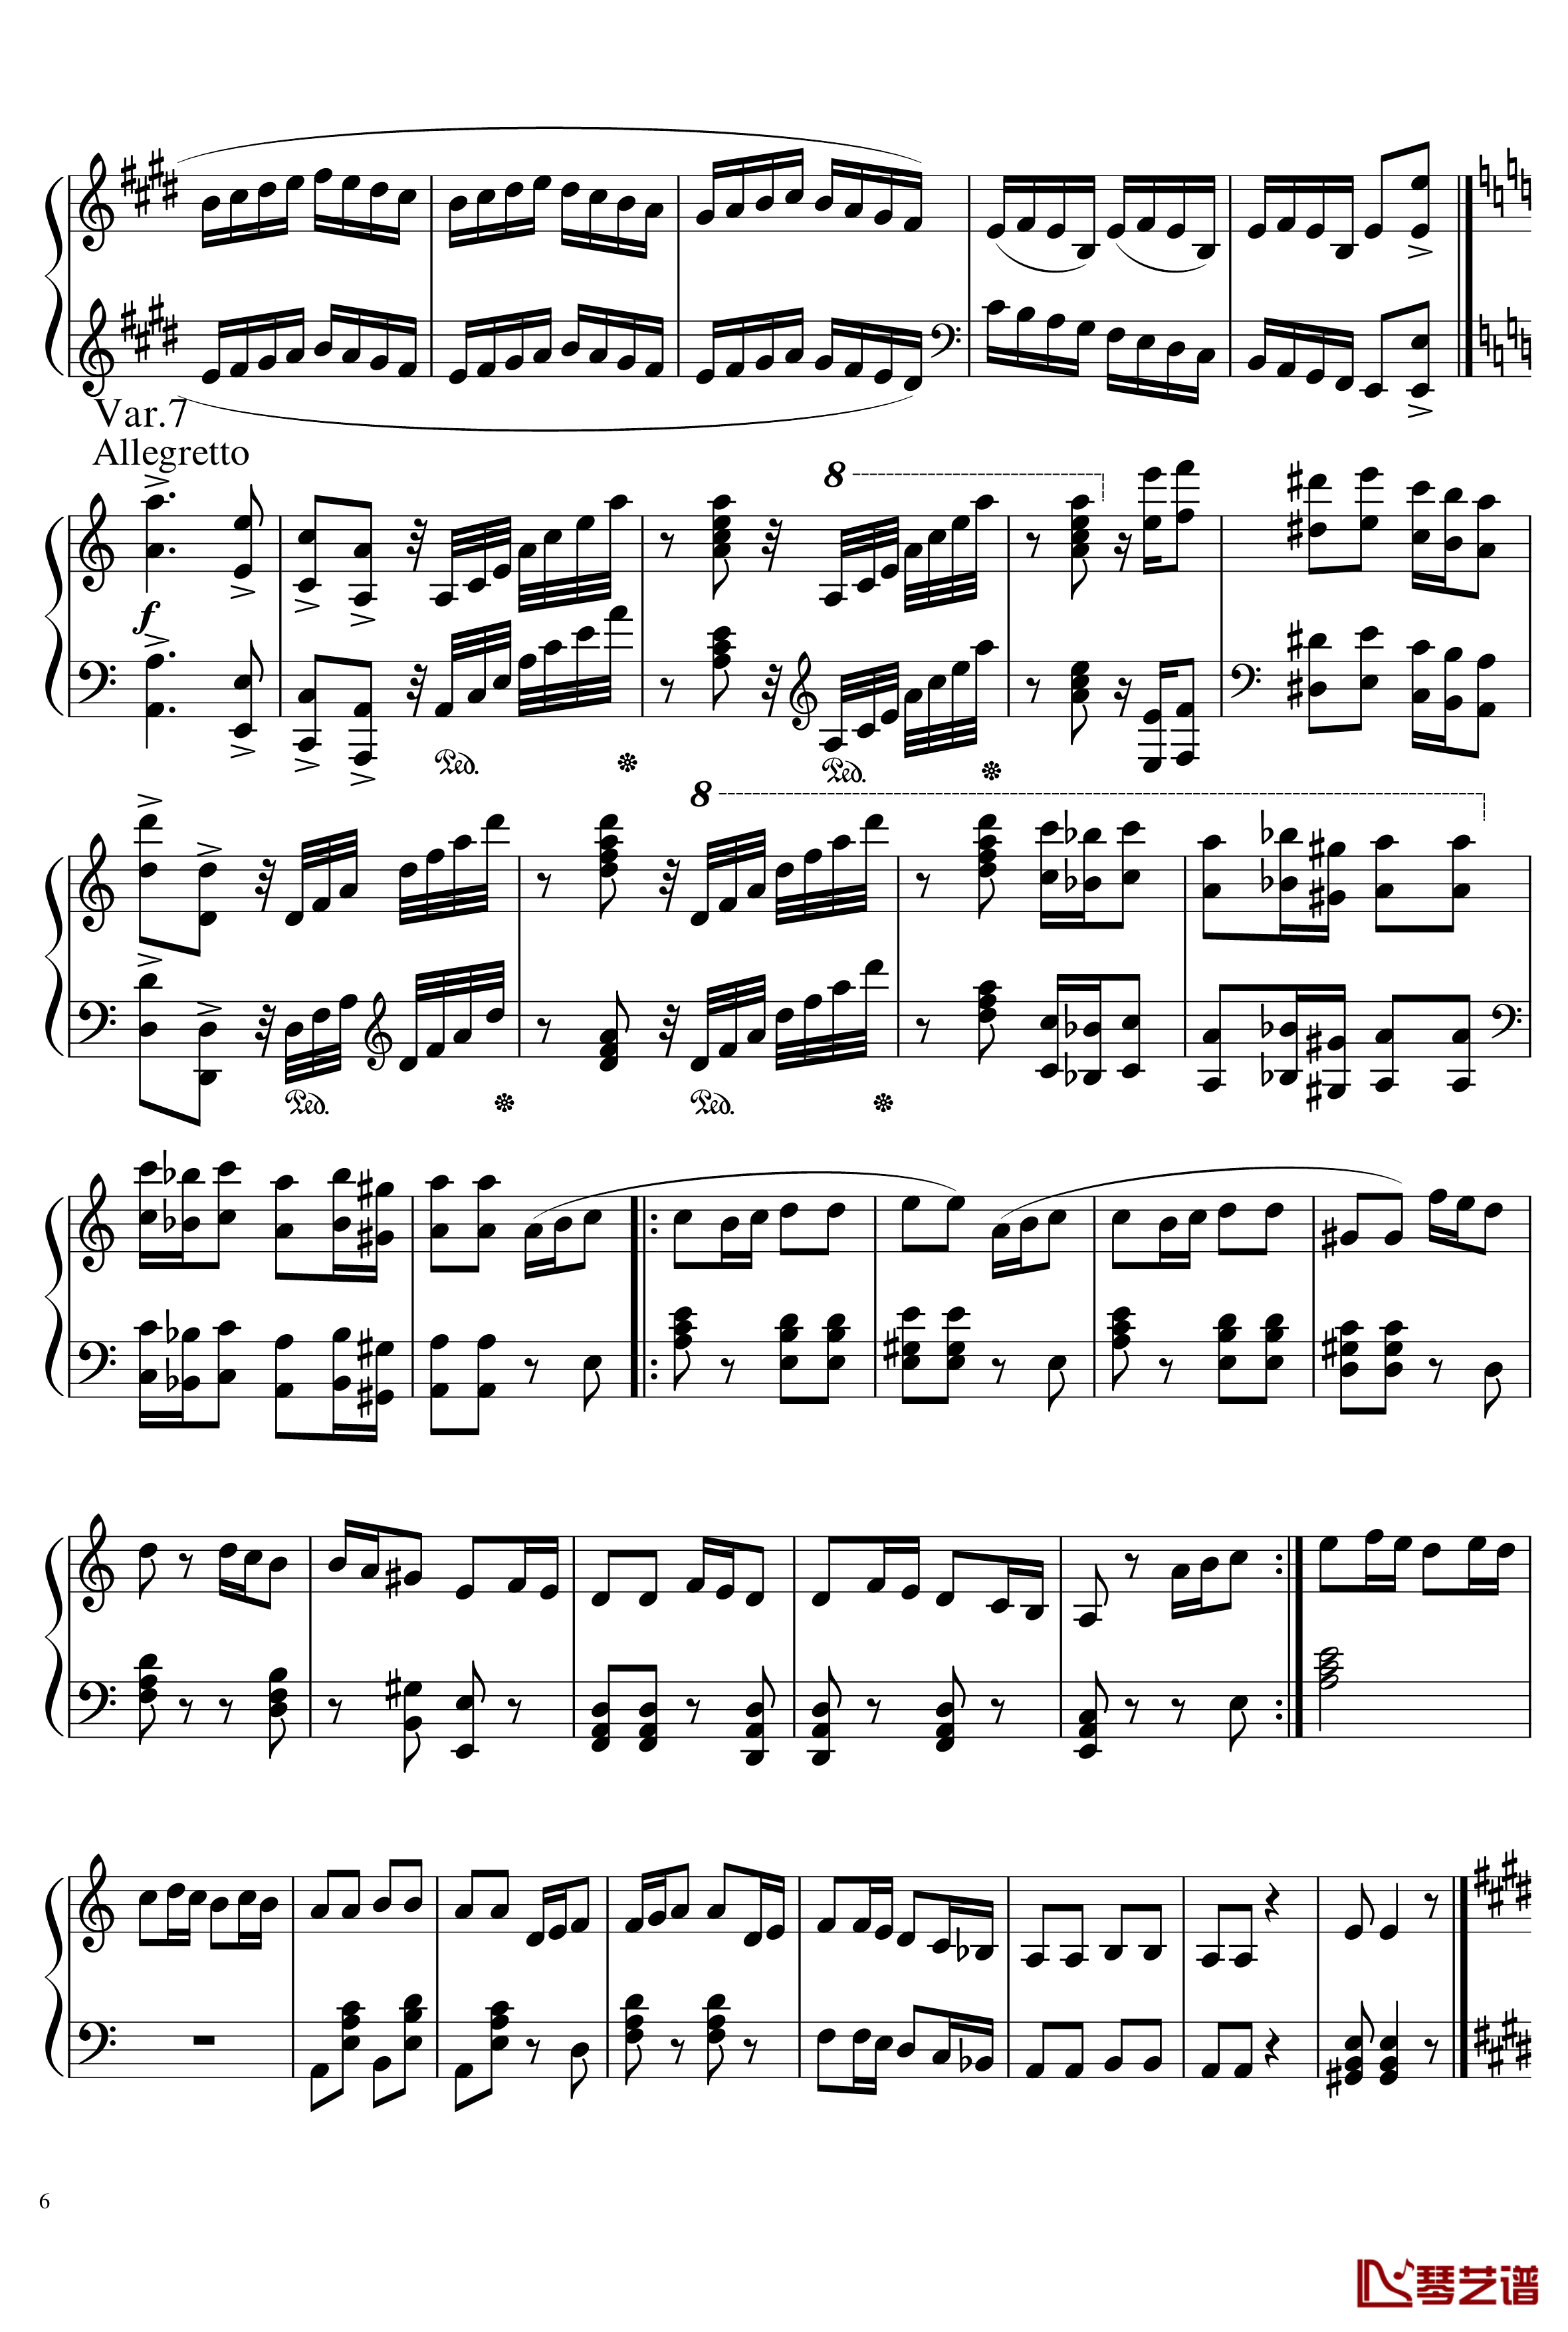 帕格尼尼主题变奏曲钢琴谱-Ice-KUN6